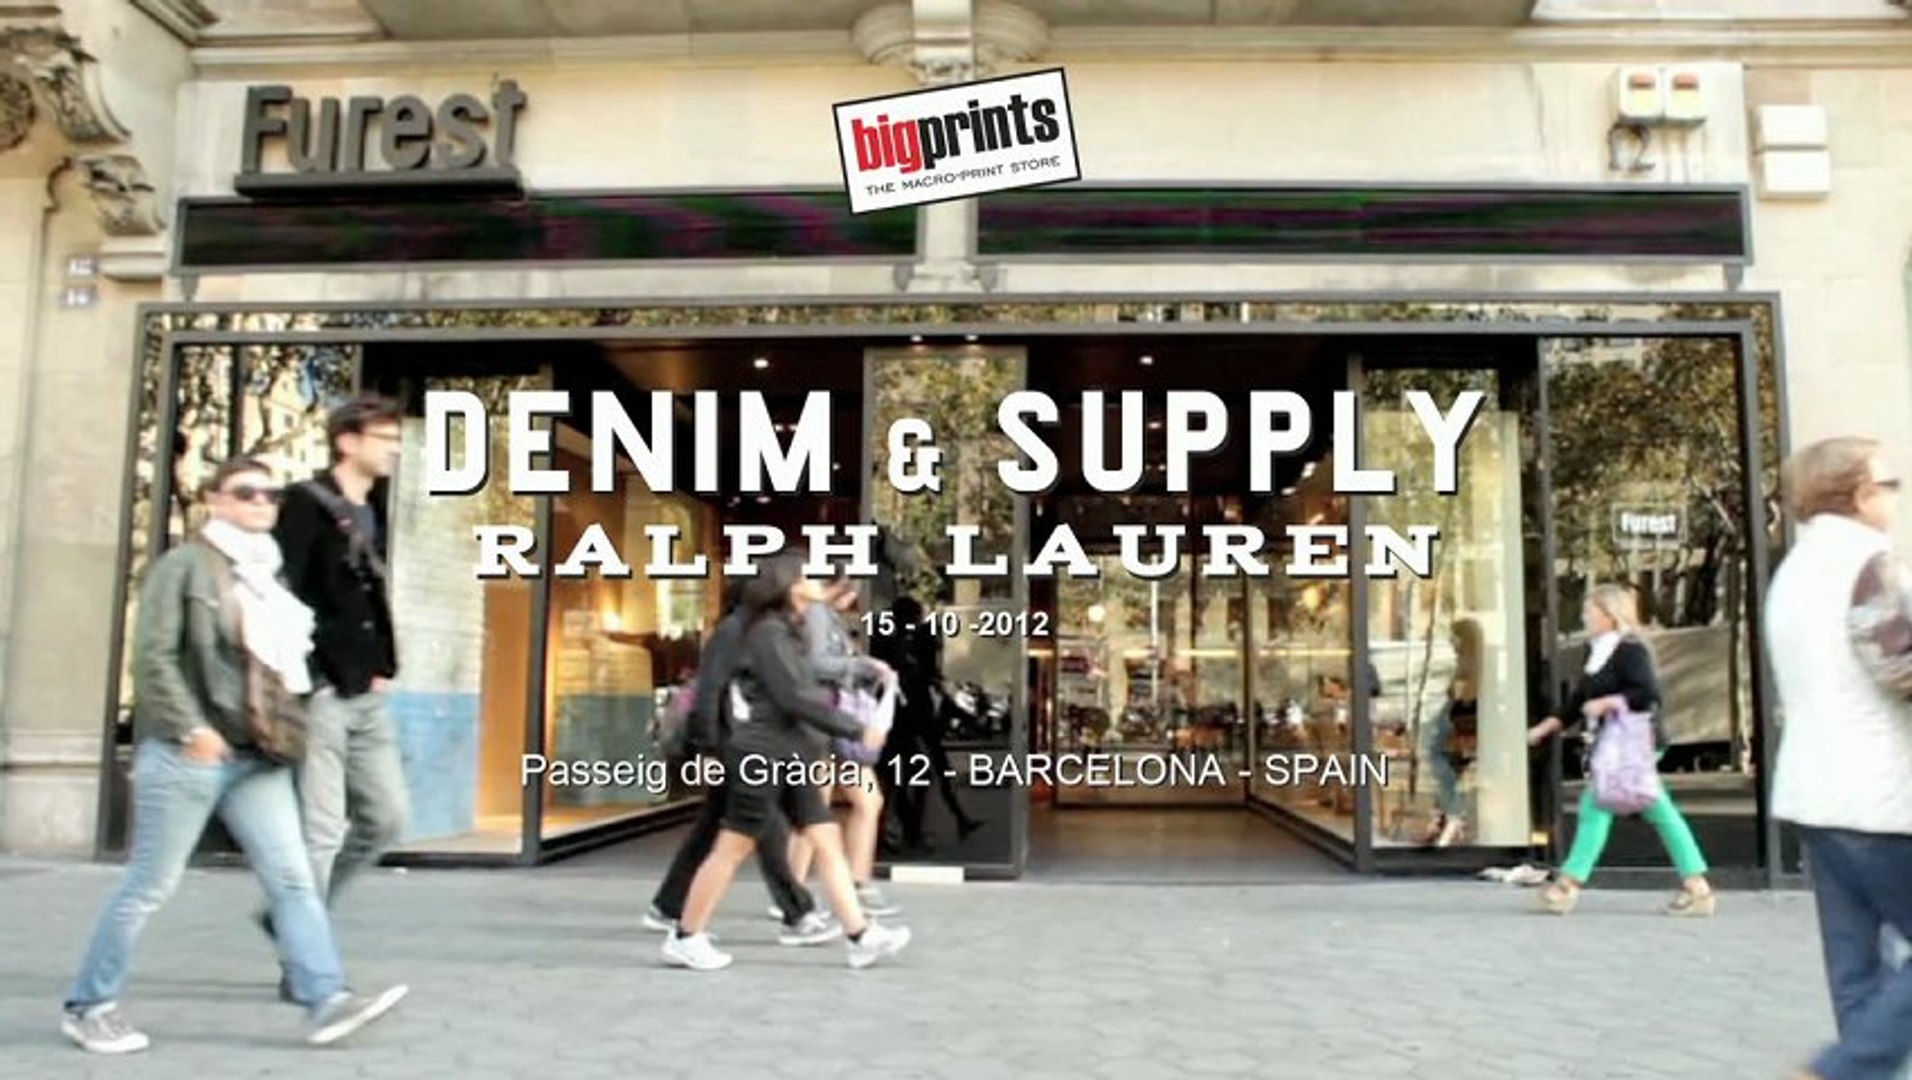 Espectacular decorado para escaparate Ralph Lauren en Passeig Gracia  Barcelona - Vídeo Dailymotion